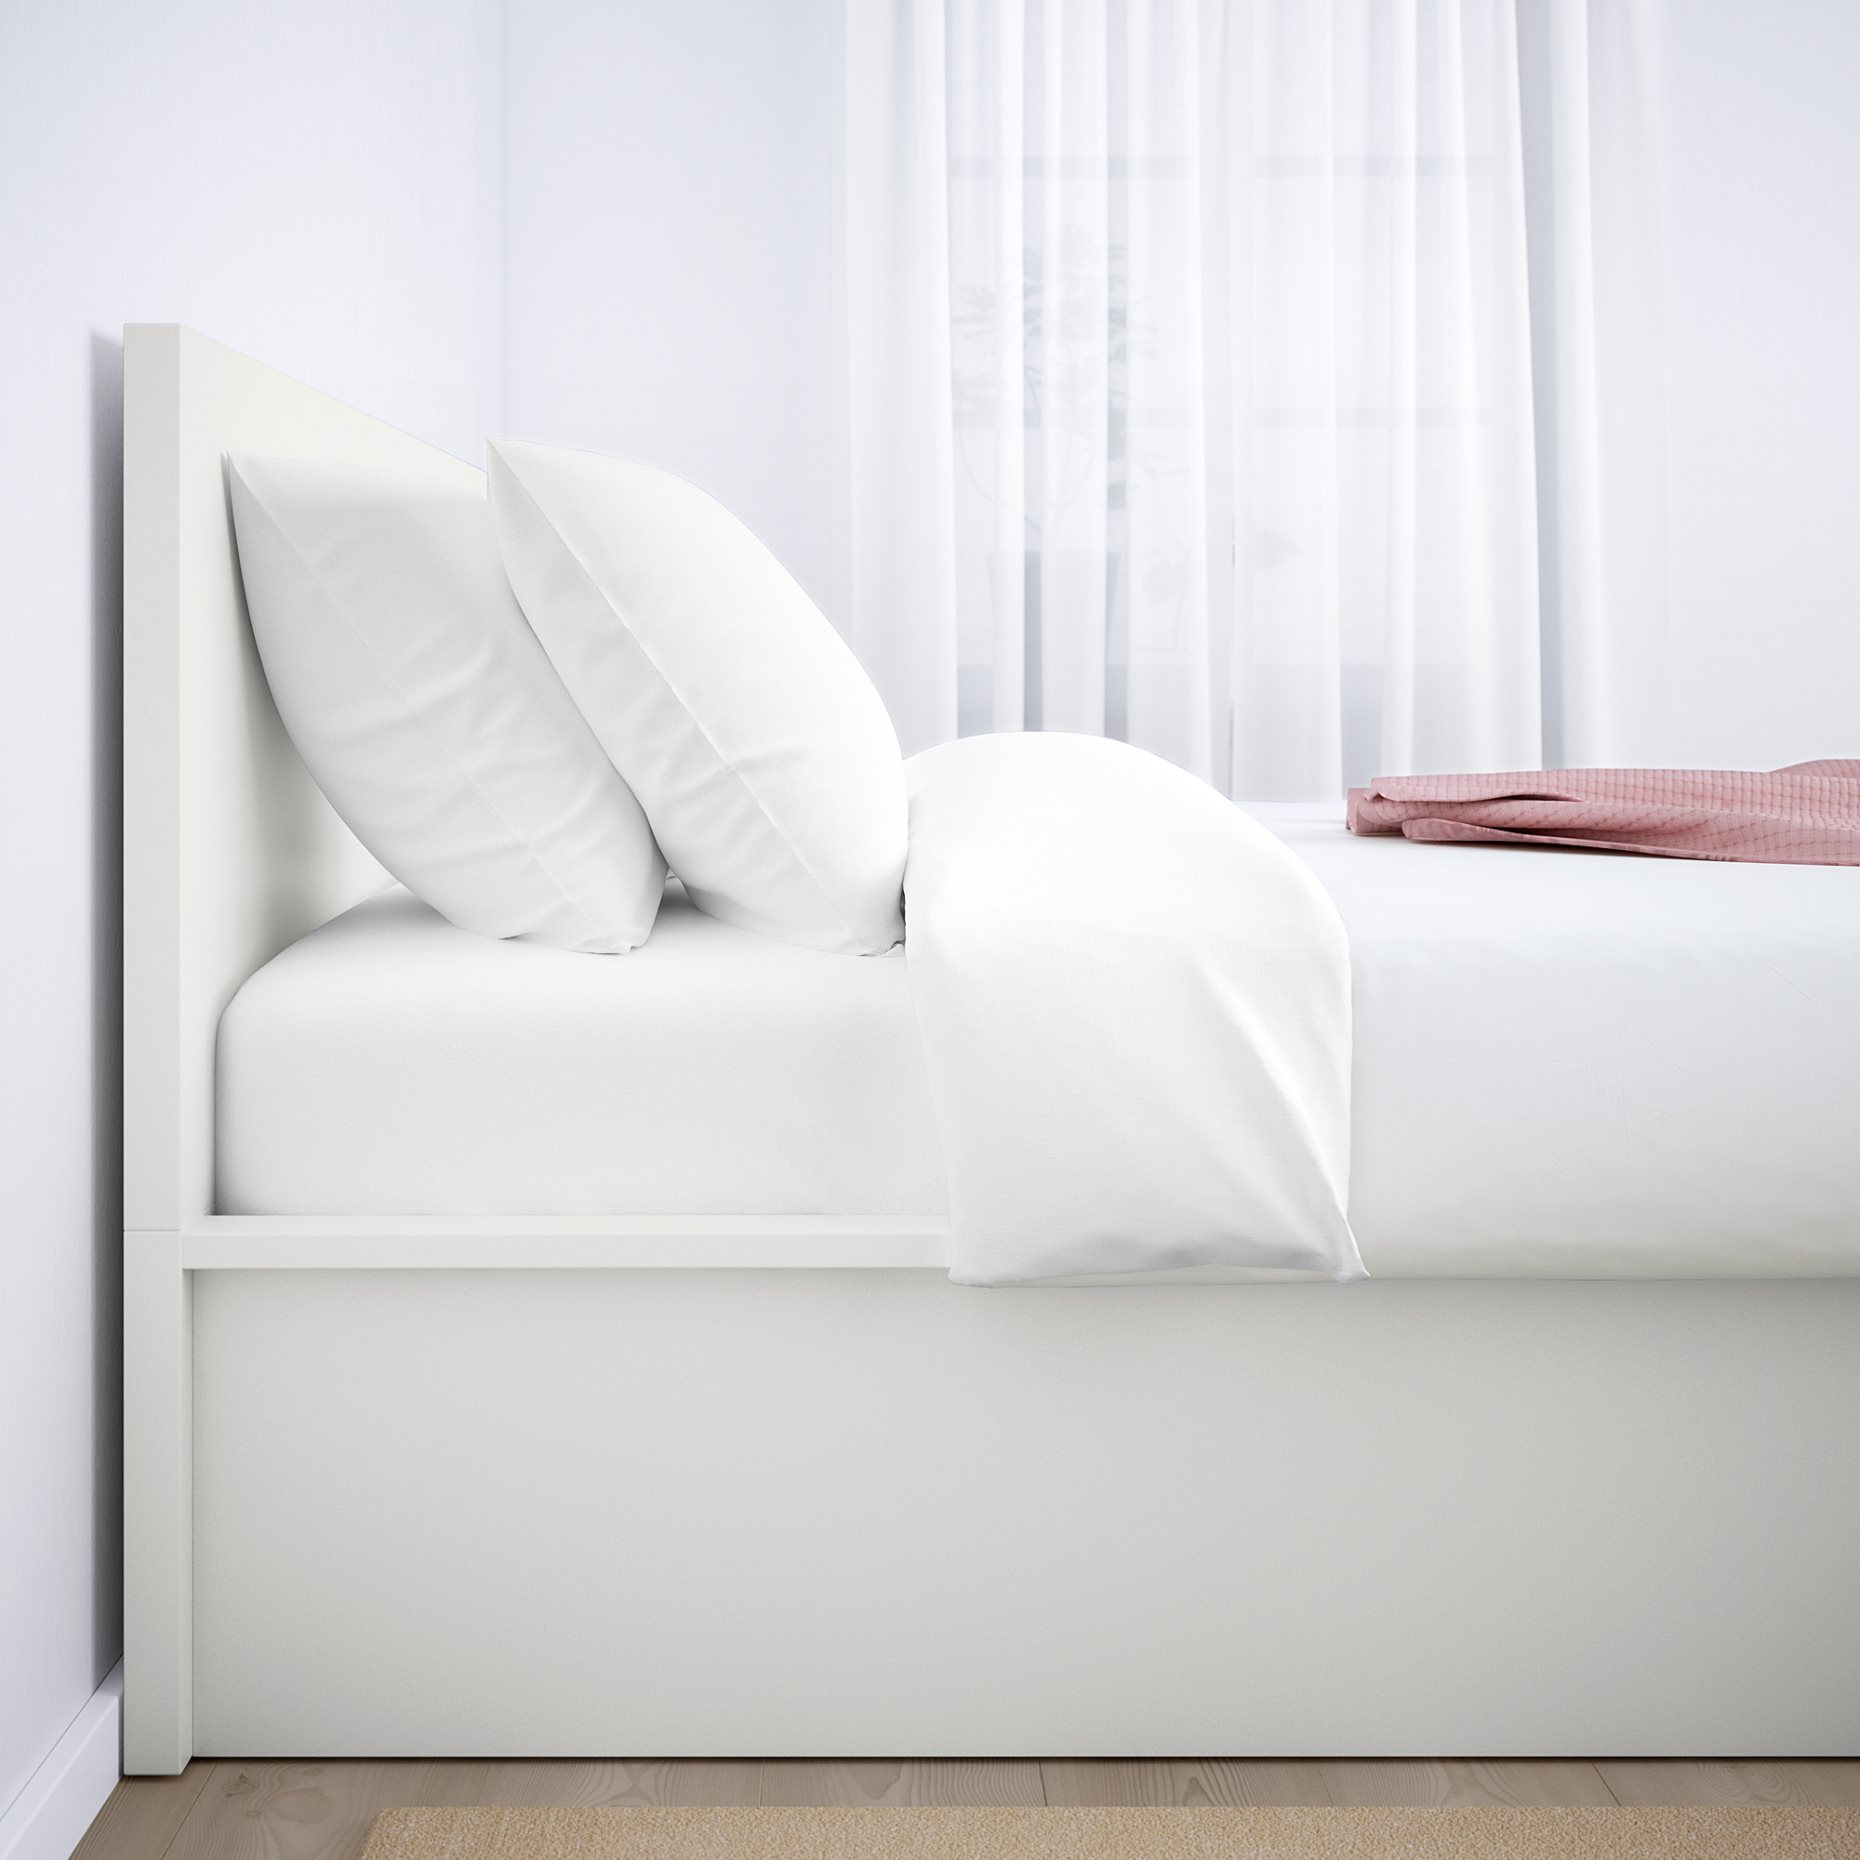 MALM, κρεβάτι με αποθηκευτικό χώρο, 140x200 cm, 904.047.99